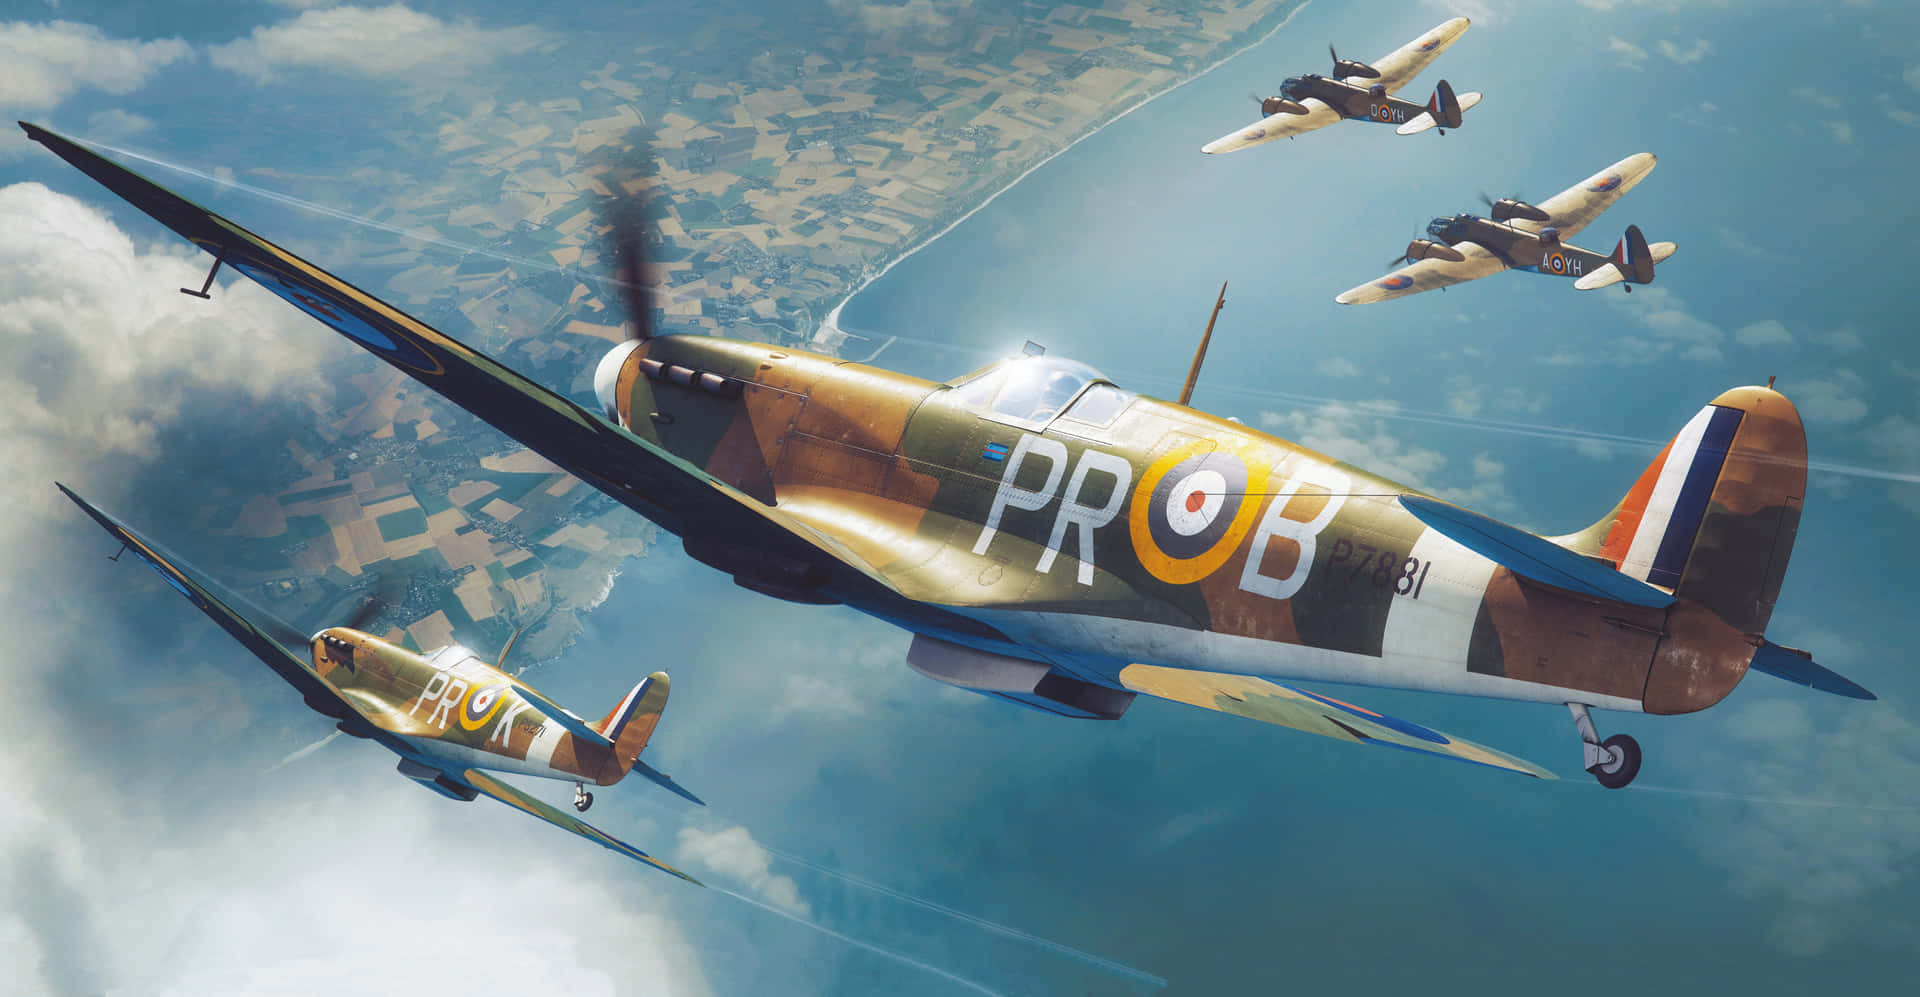 Ansichtdes Ikonischen Britischen Kampfflugzeugs Aus Dem Zweiten Weltkrieg, Dem Supermarine Spitfire Wallpaper